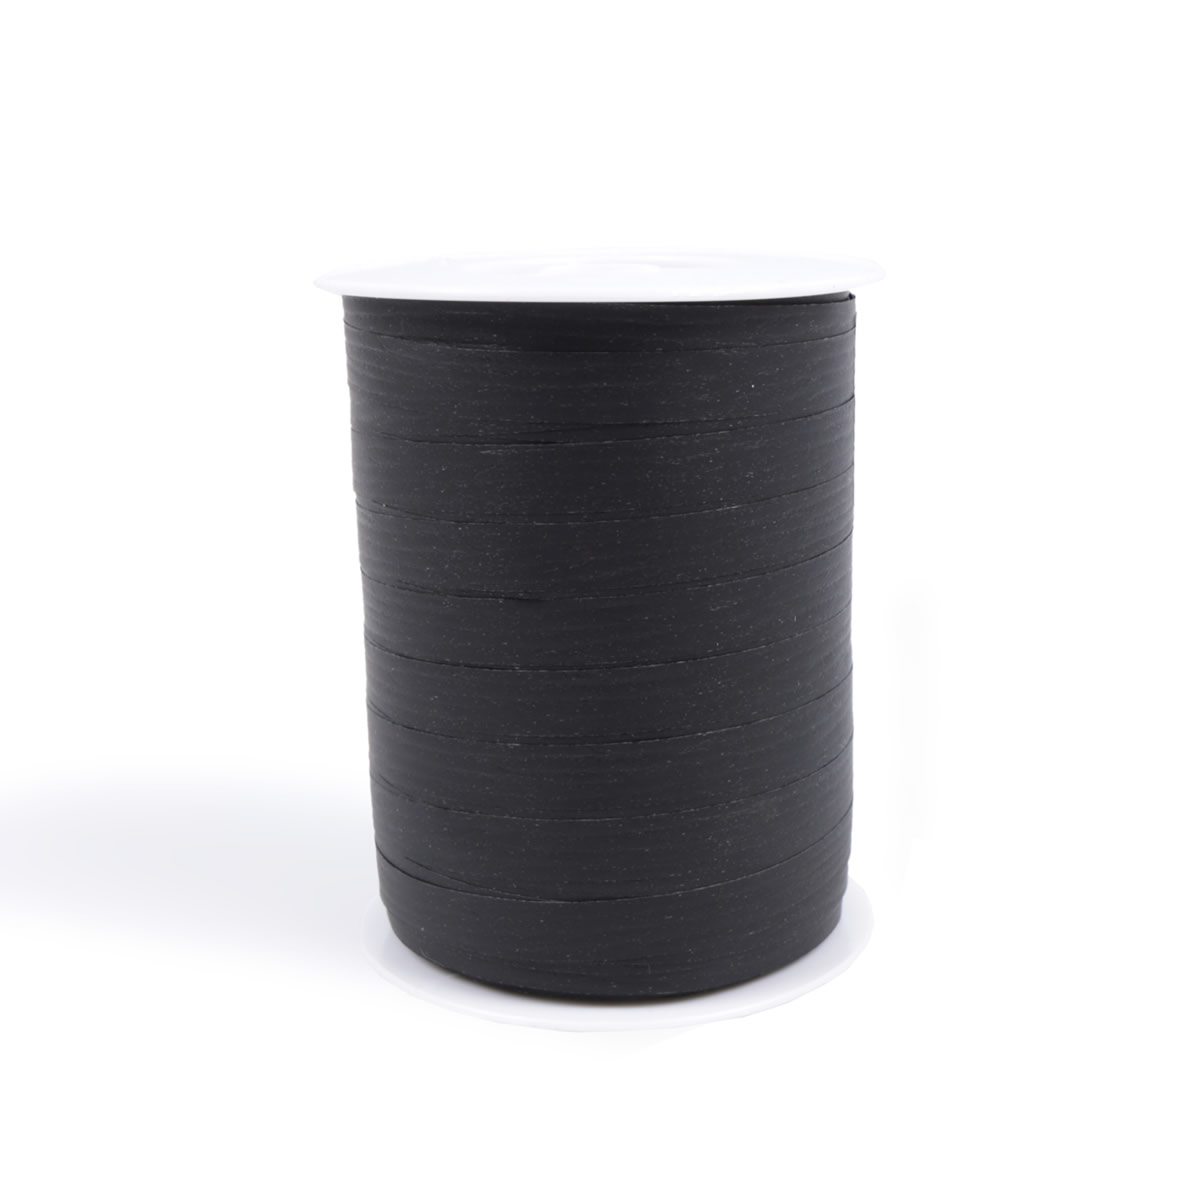 Paperlook krullint zwart 10 mm (250 meter)